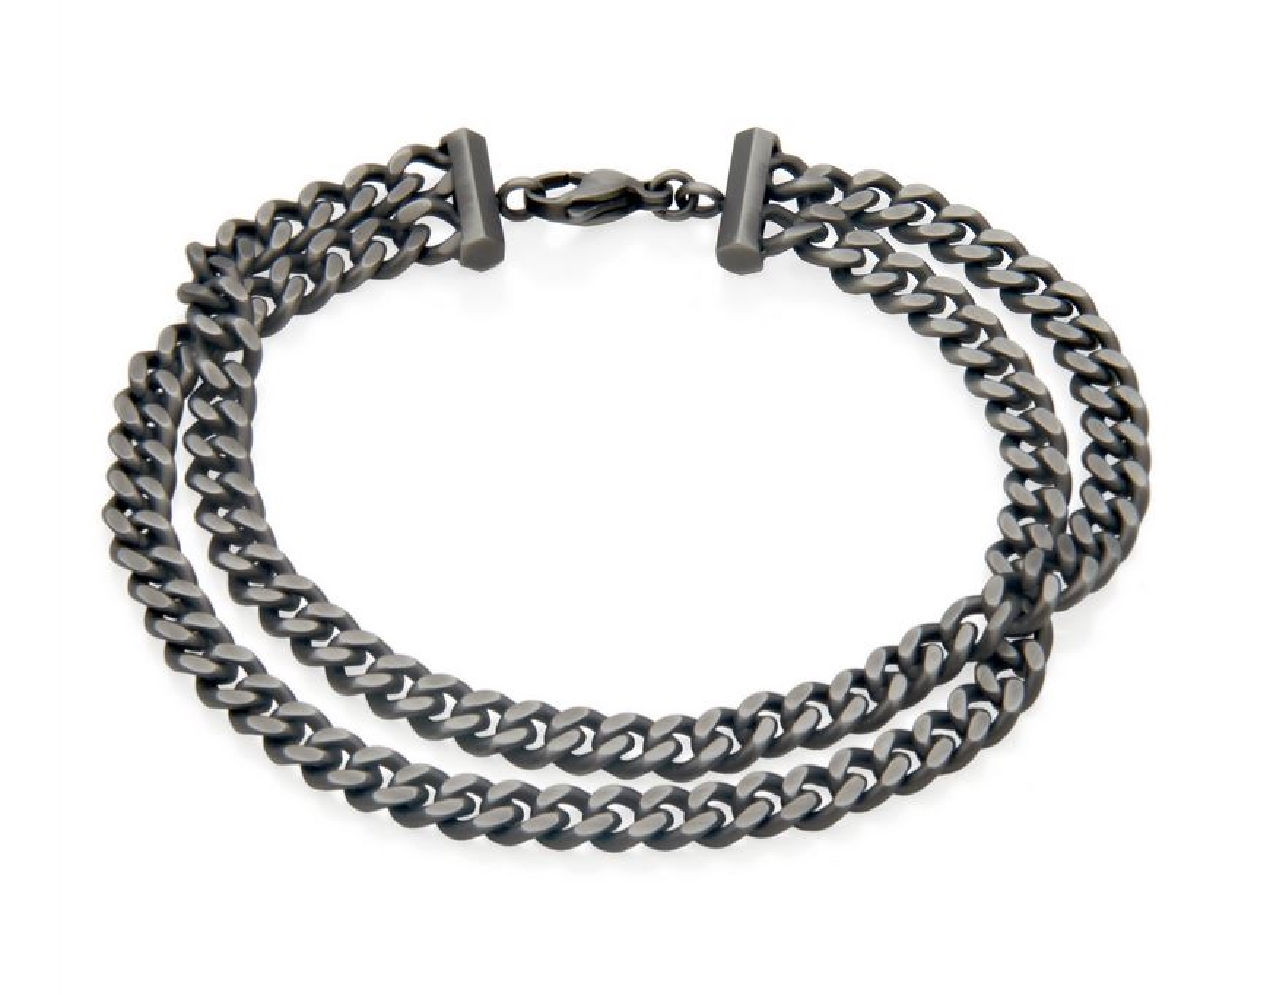 STEELX
Double Curb Chain Bracelet
Antique Sil...